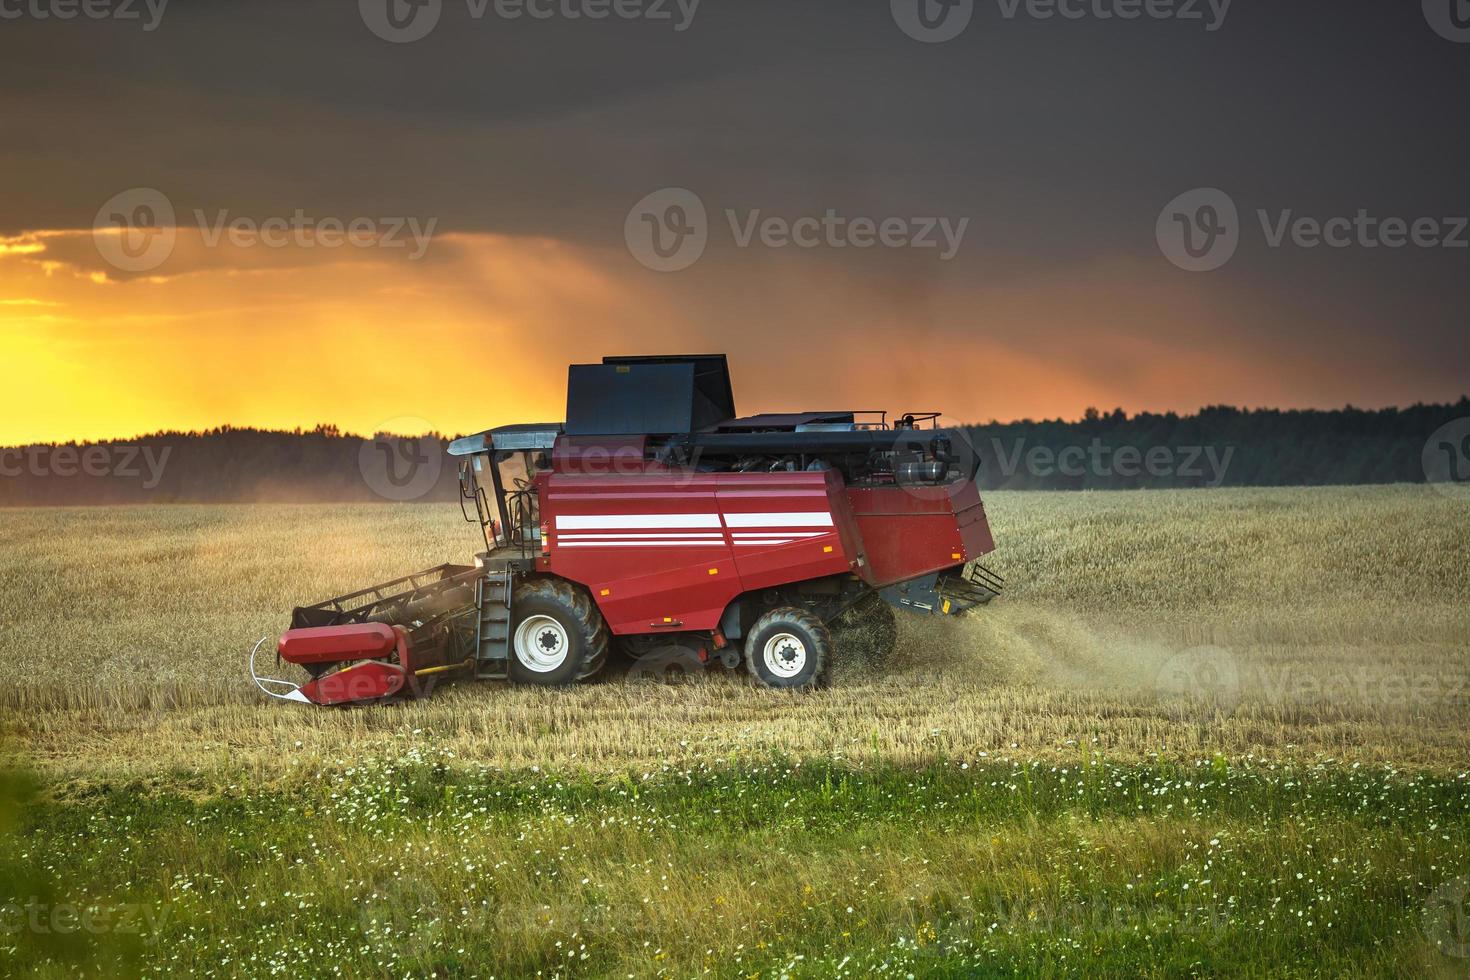 la moderna mietitrice pesante rimuove il pane di grano maturo nel campo prima della tempesta. lavoro agricolo stagionale foto